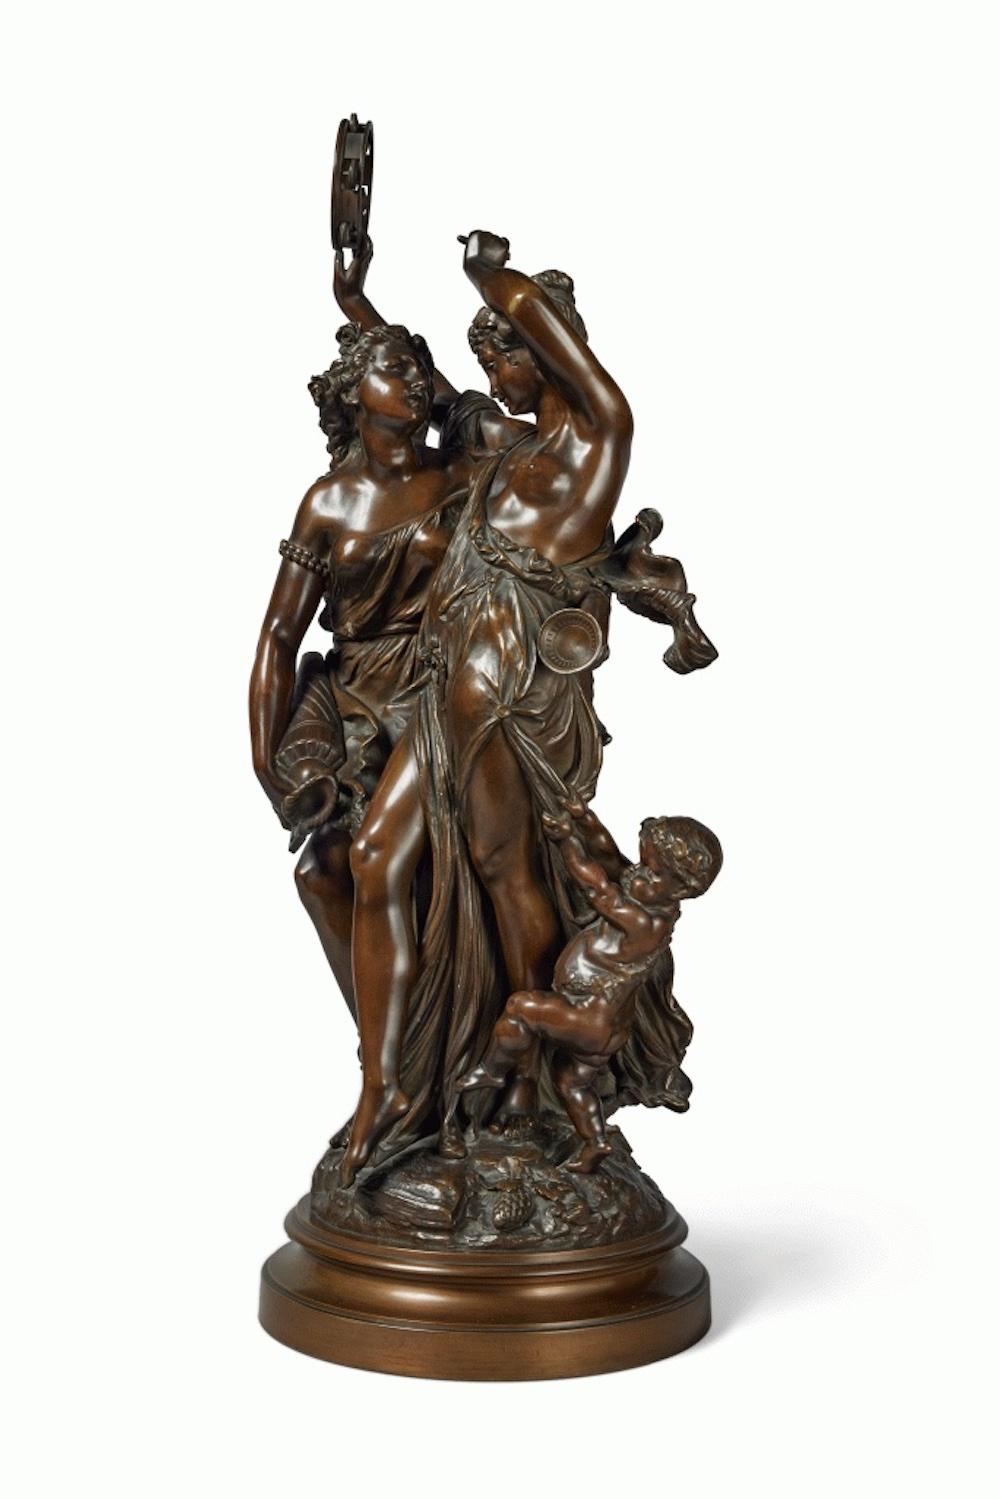 Danse au Tambourin - Sculpture by Albert-Ernest Carrier-Belleuse